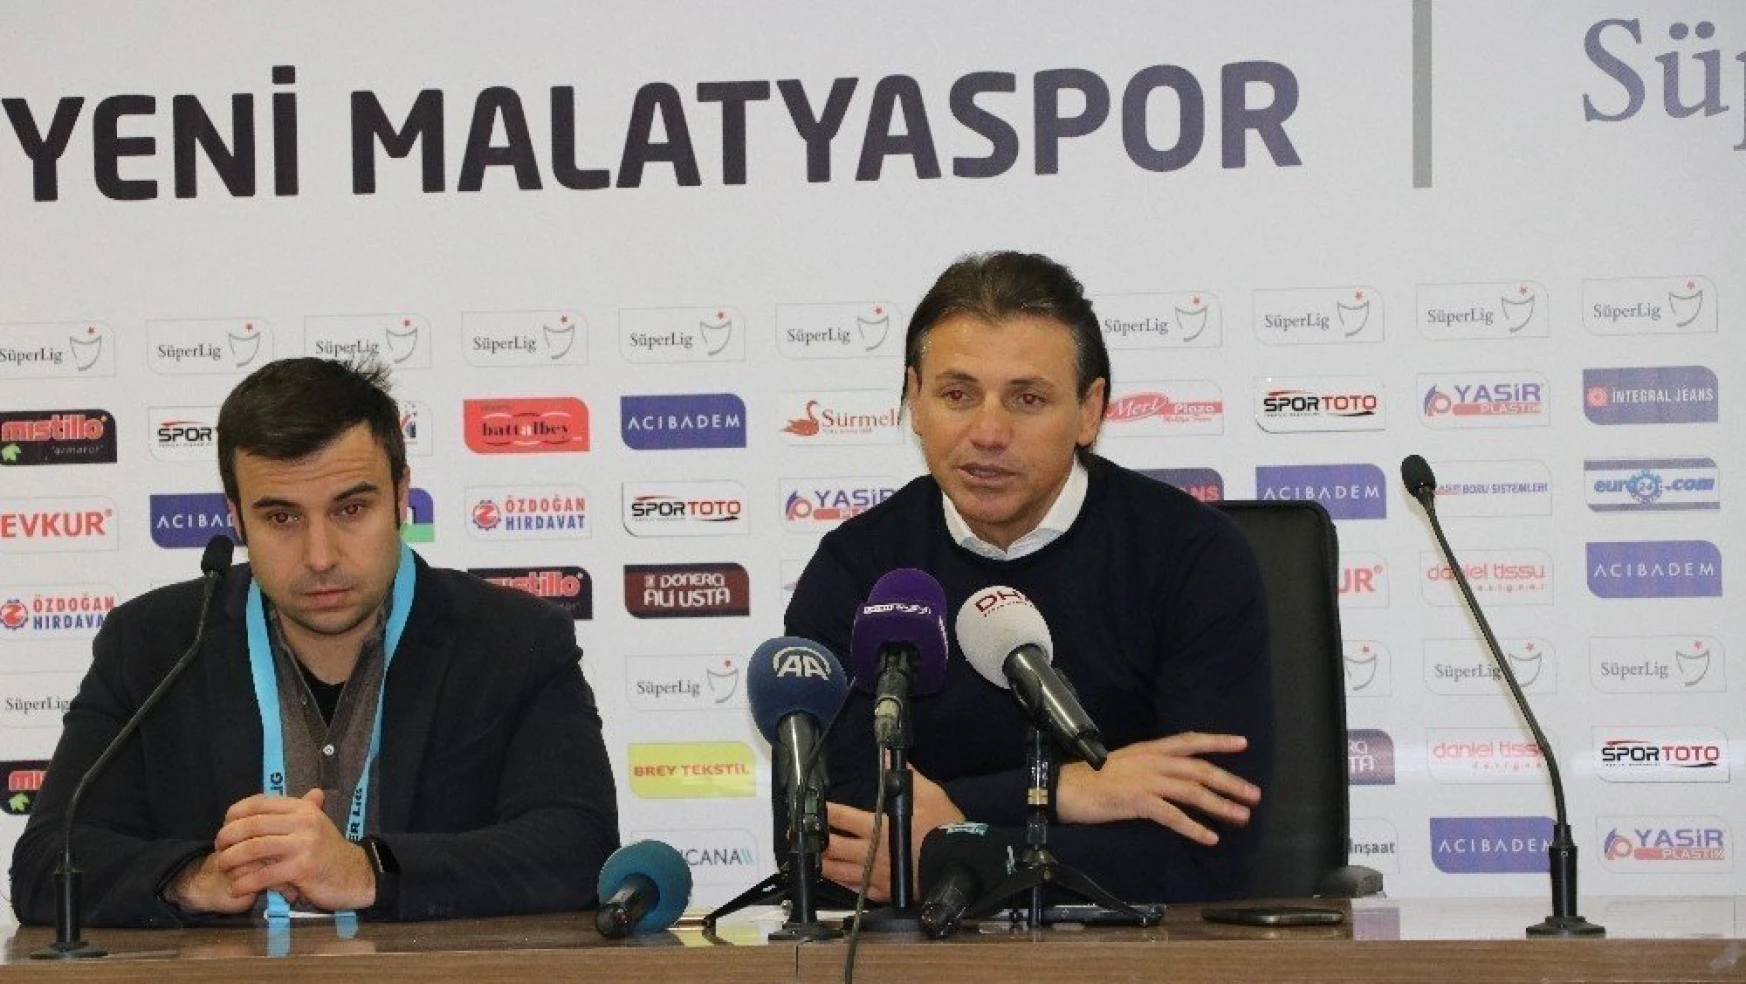 E. Yeni Malatyaspor - Göztepe maçının ardından
